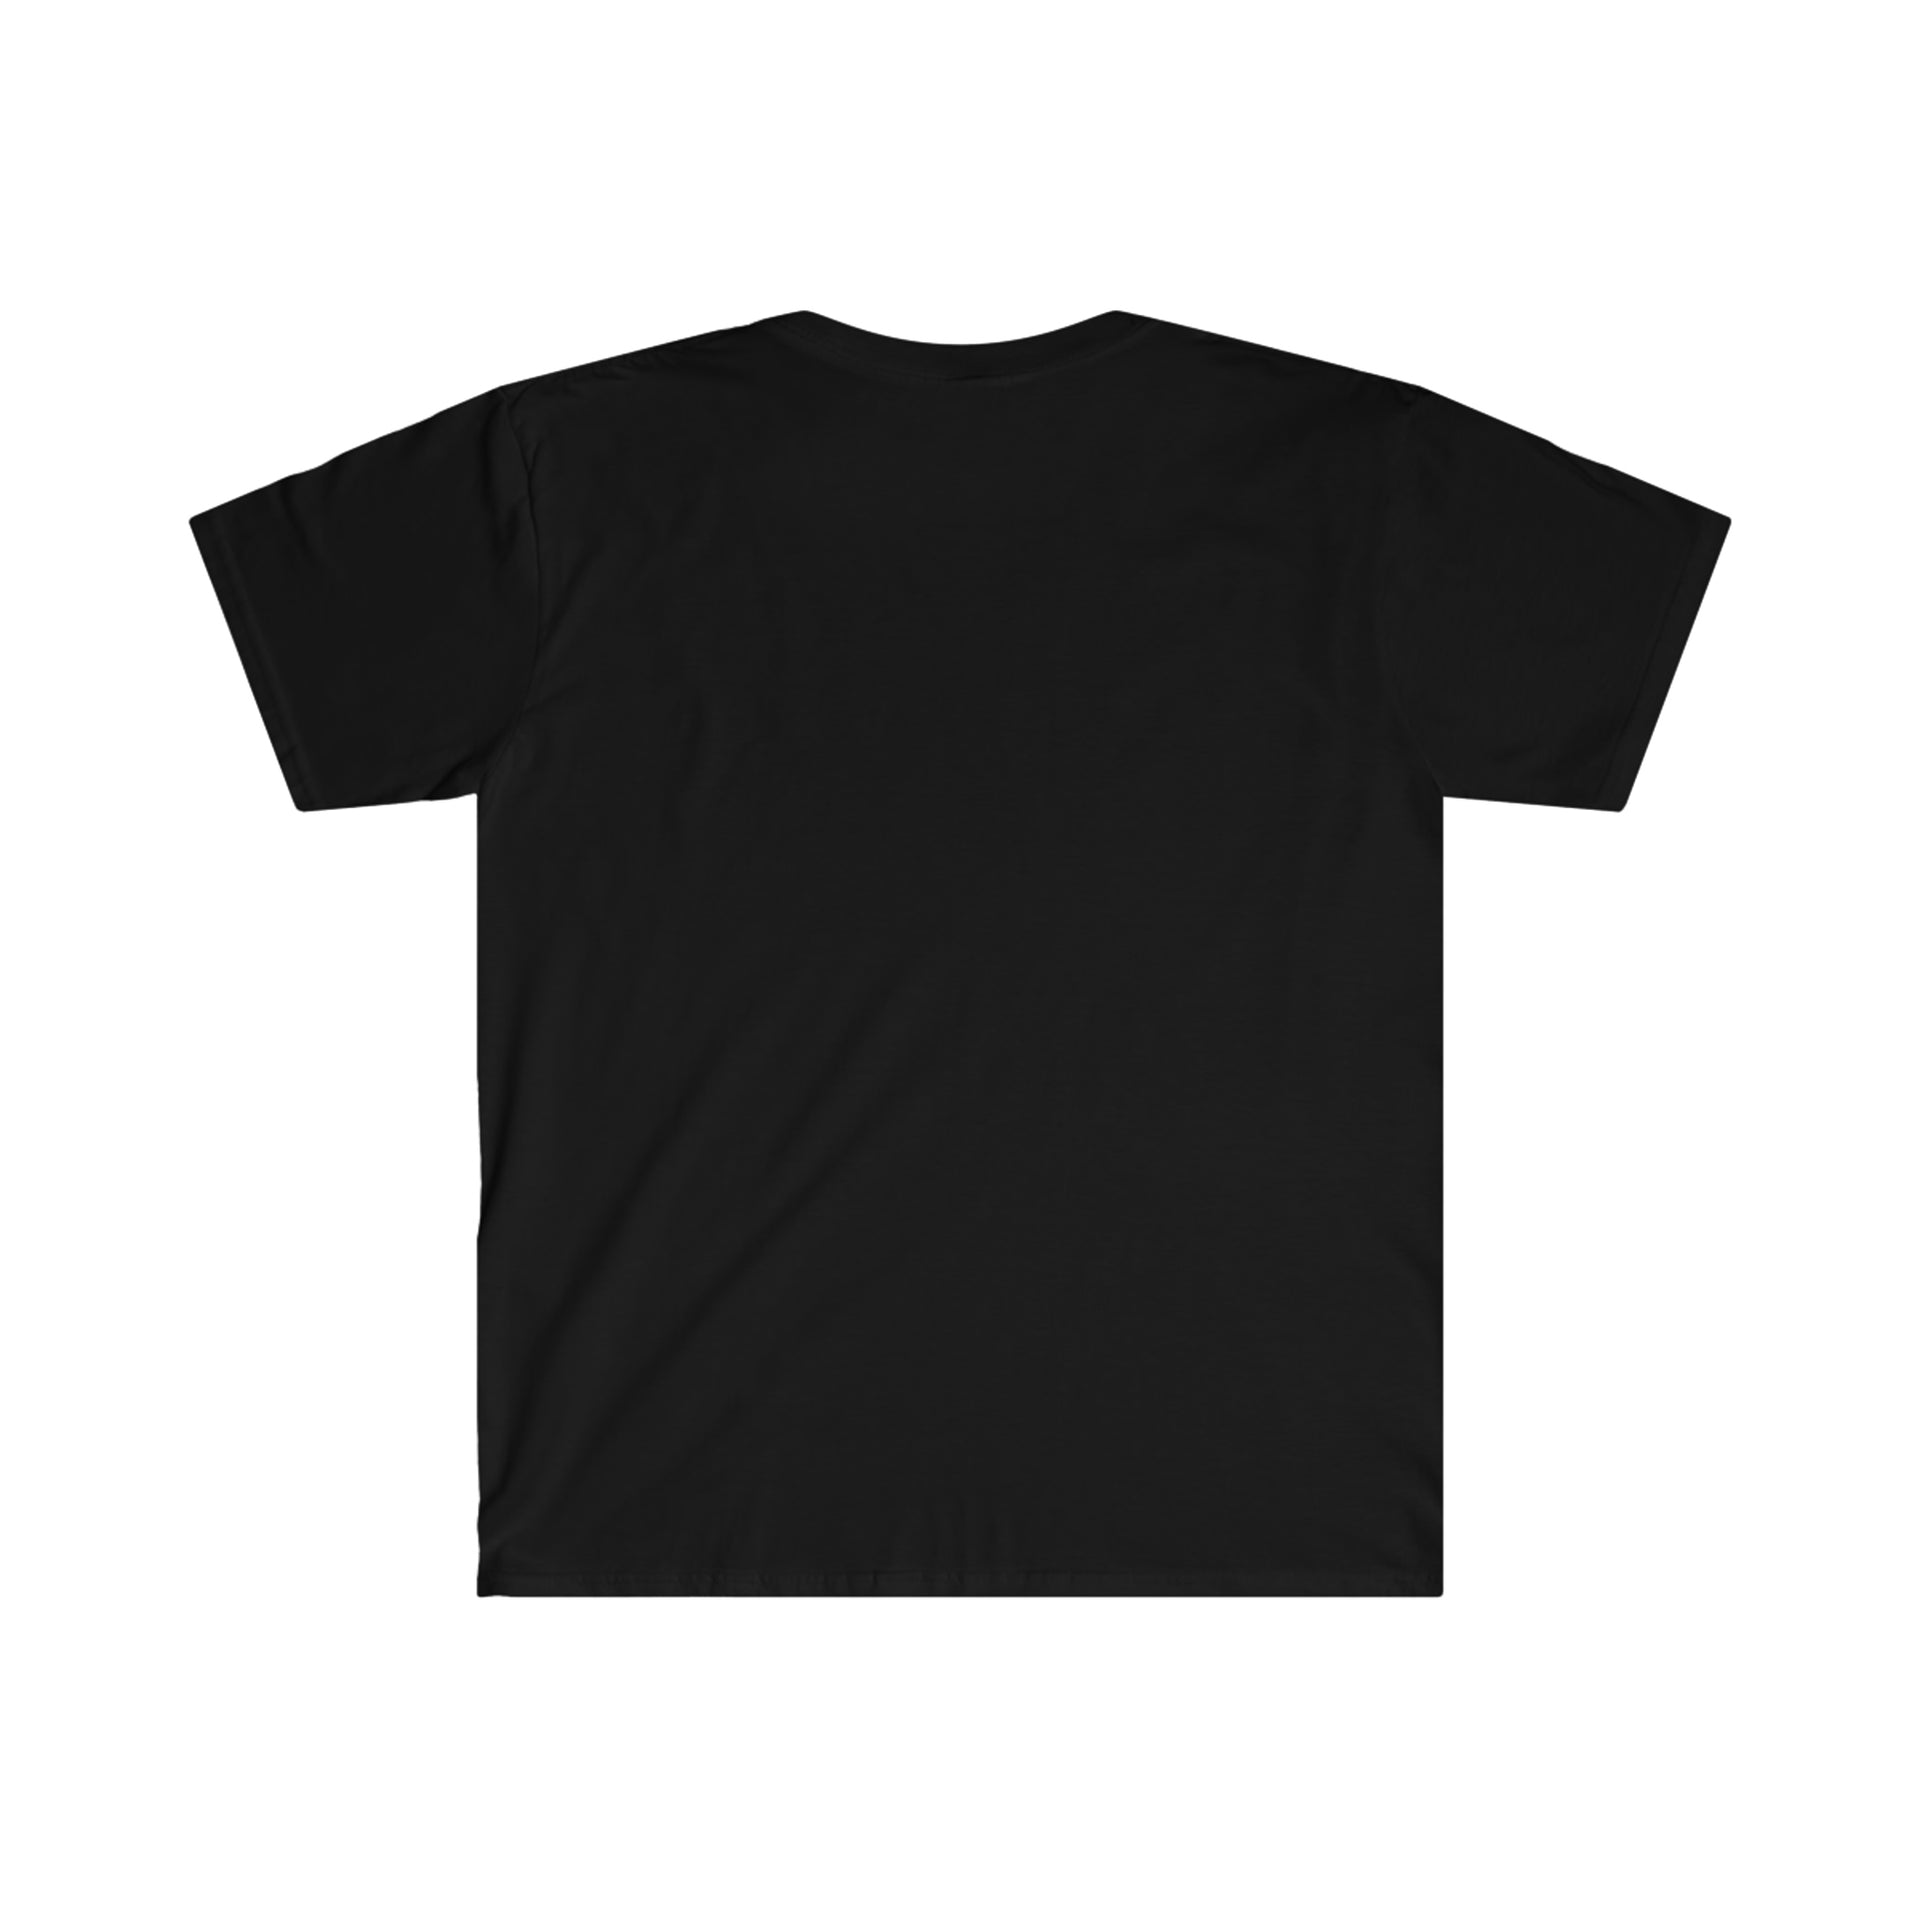 Back Orifice logo Unisex Softstyle T-Shirt